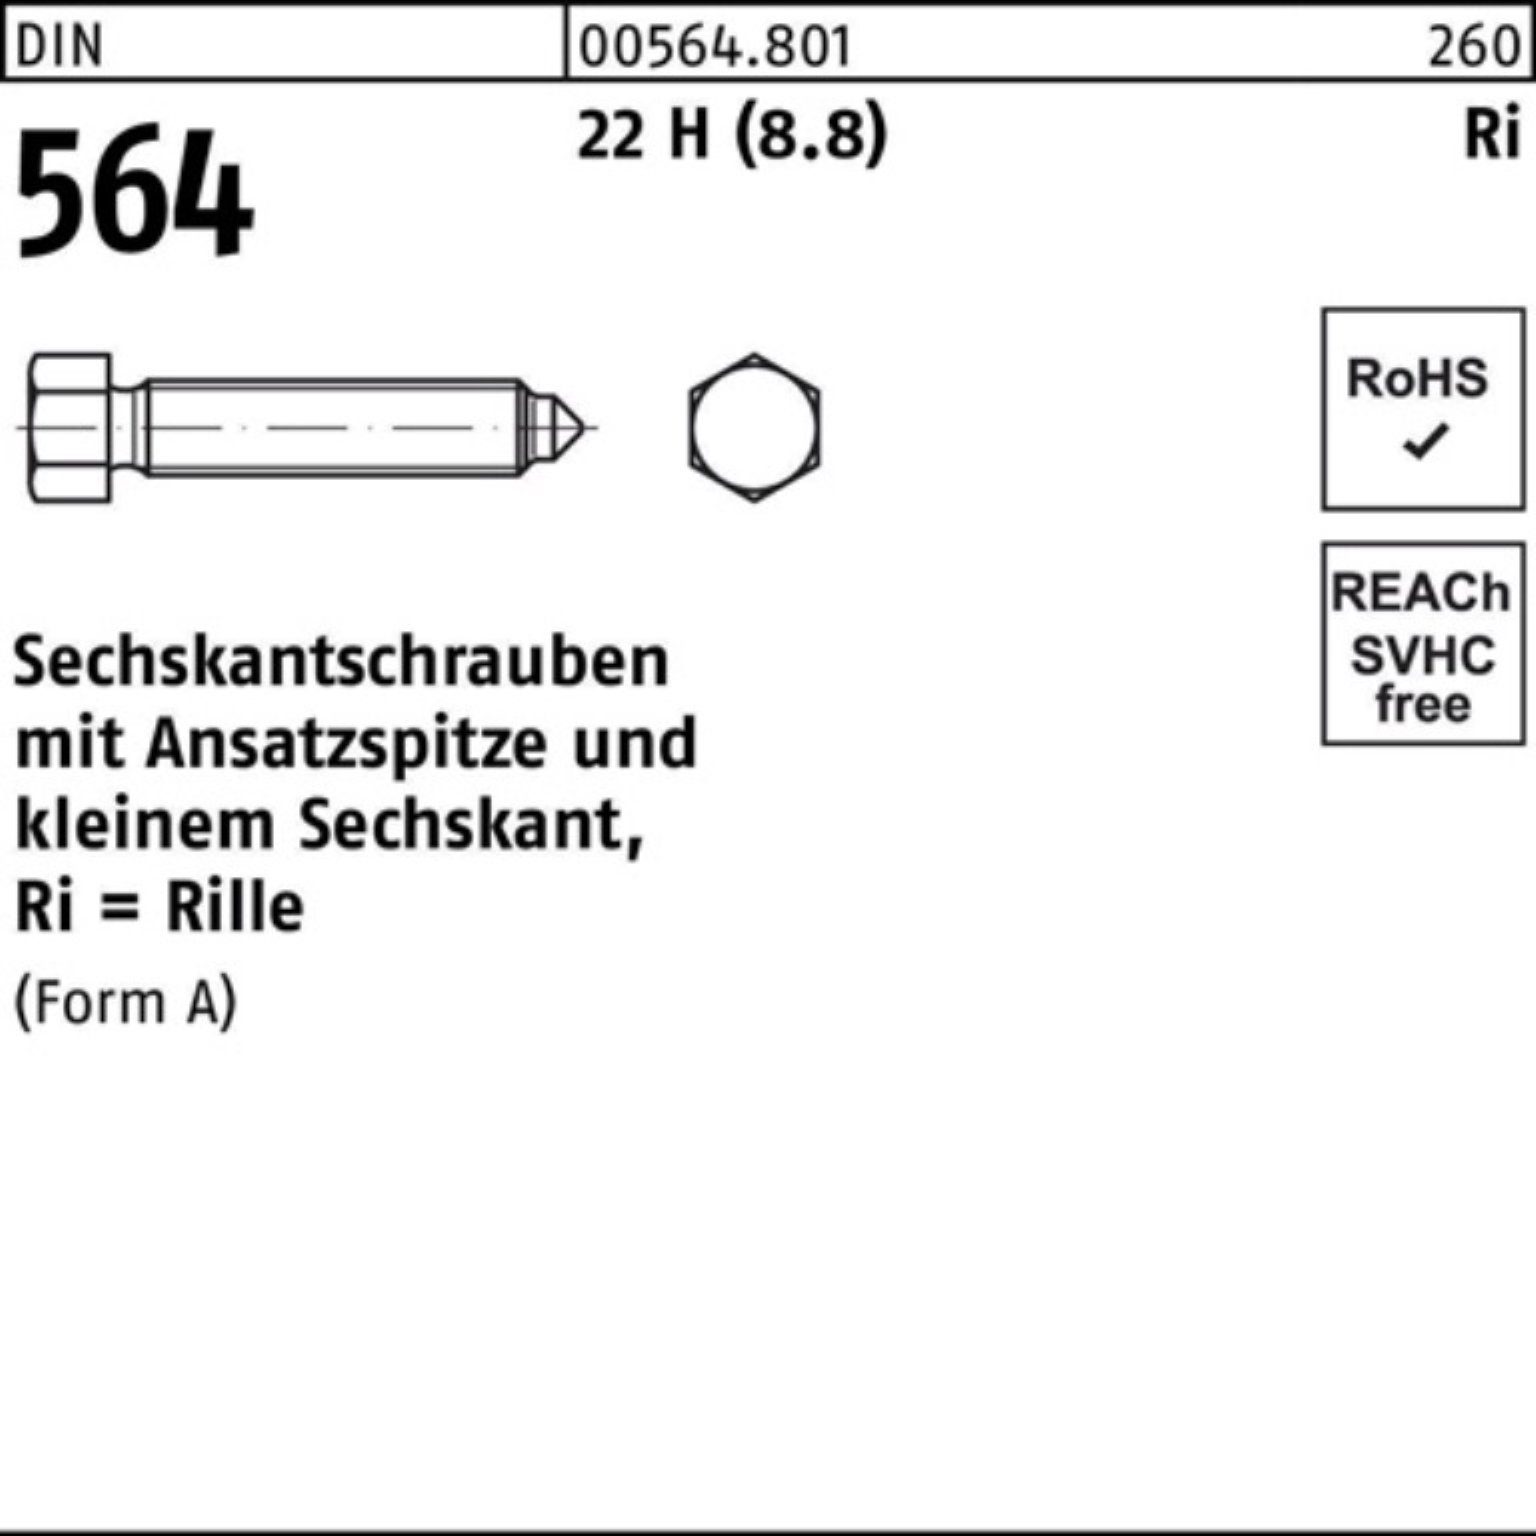 Reyher Sechskantschraube 100er Pack Sechskantschraube DIN 564 Ansatzspitze AM 8x 20 22 H (8.8)